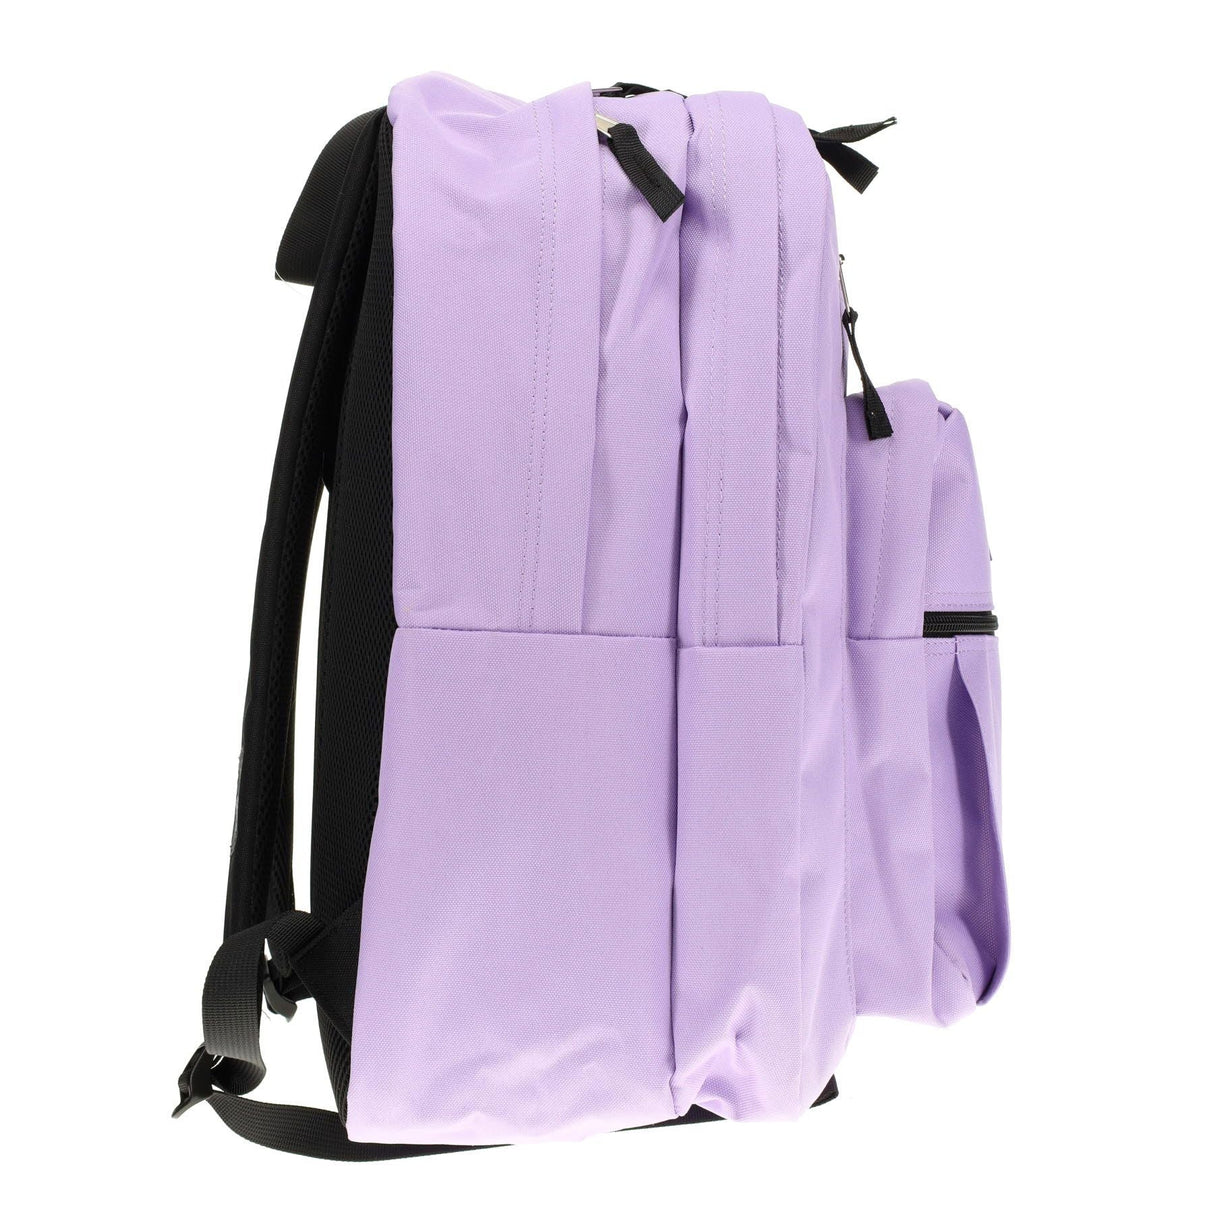 Premto 34L Backpack - Heather Haze | Stationery Shop UK